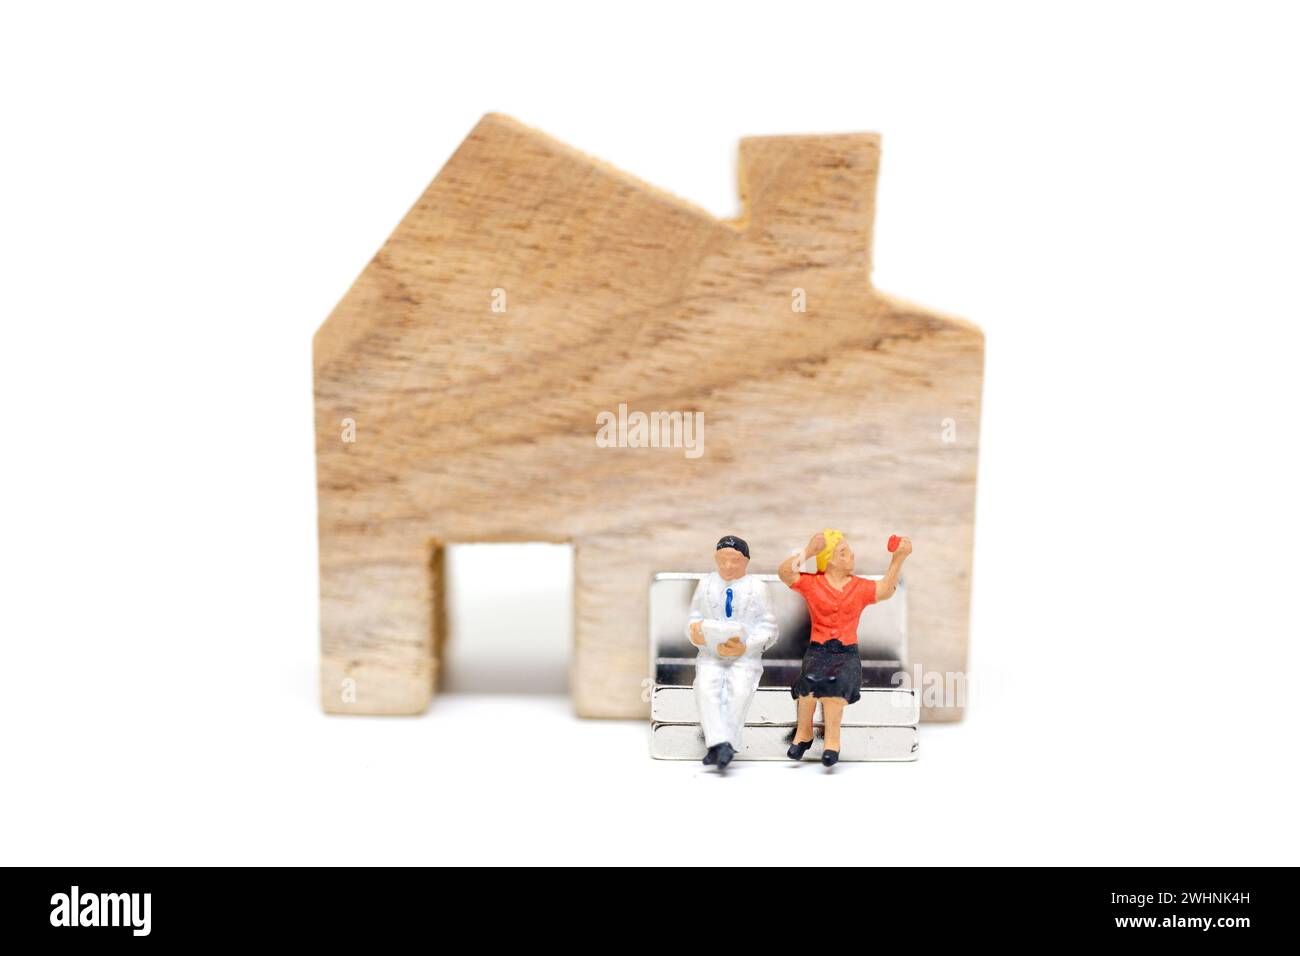 Personnages miniatures : mari et femme assis devant la maison sur fond blanc Banque D'Images